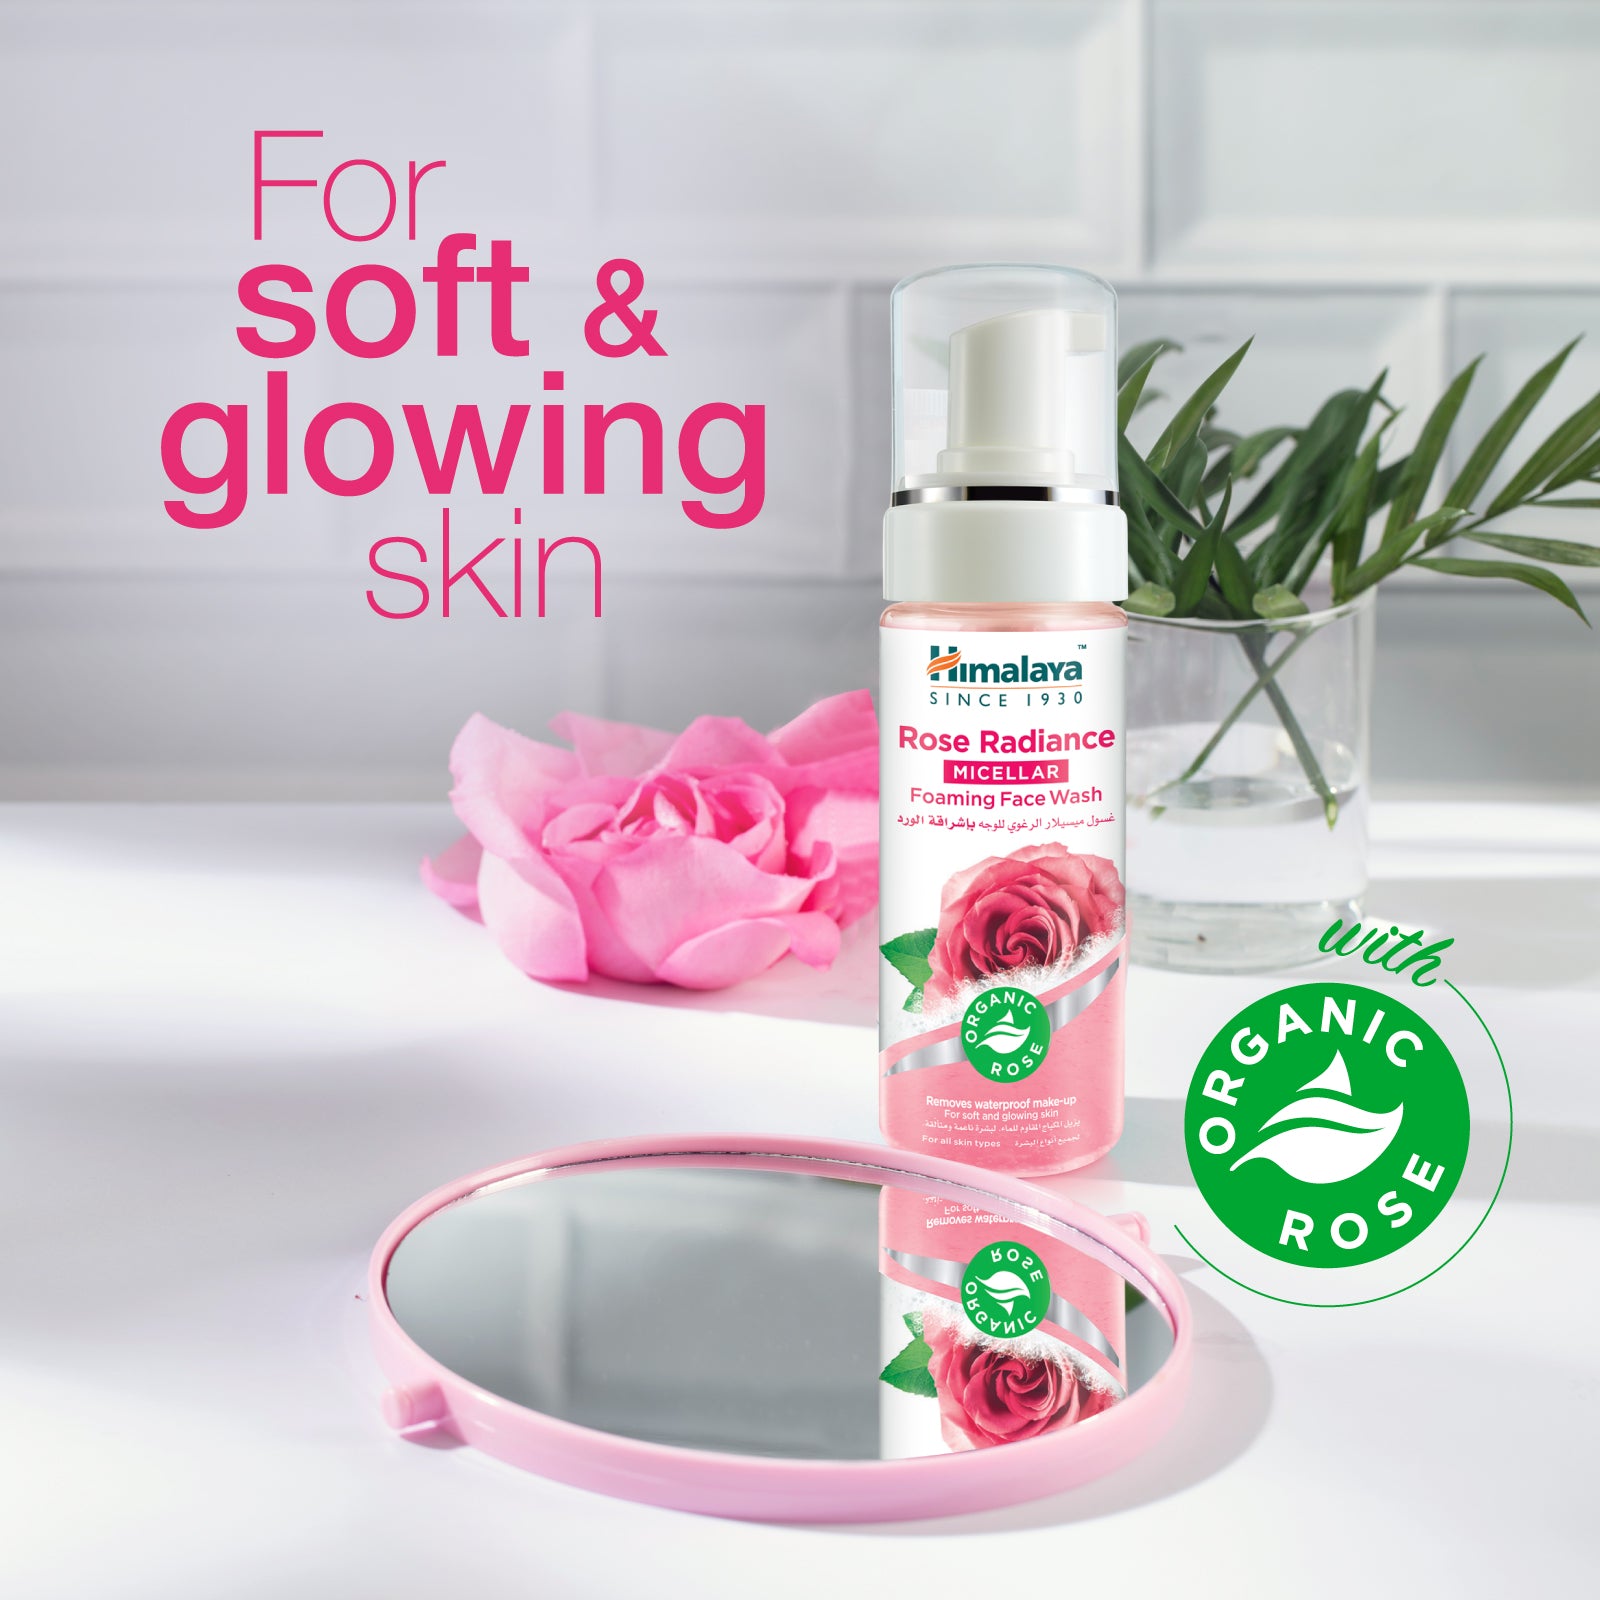 Rose Radiance Micellar Foaming Face Wash